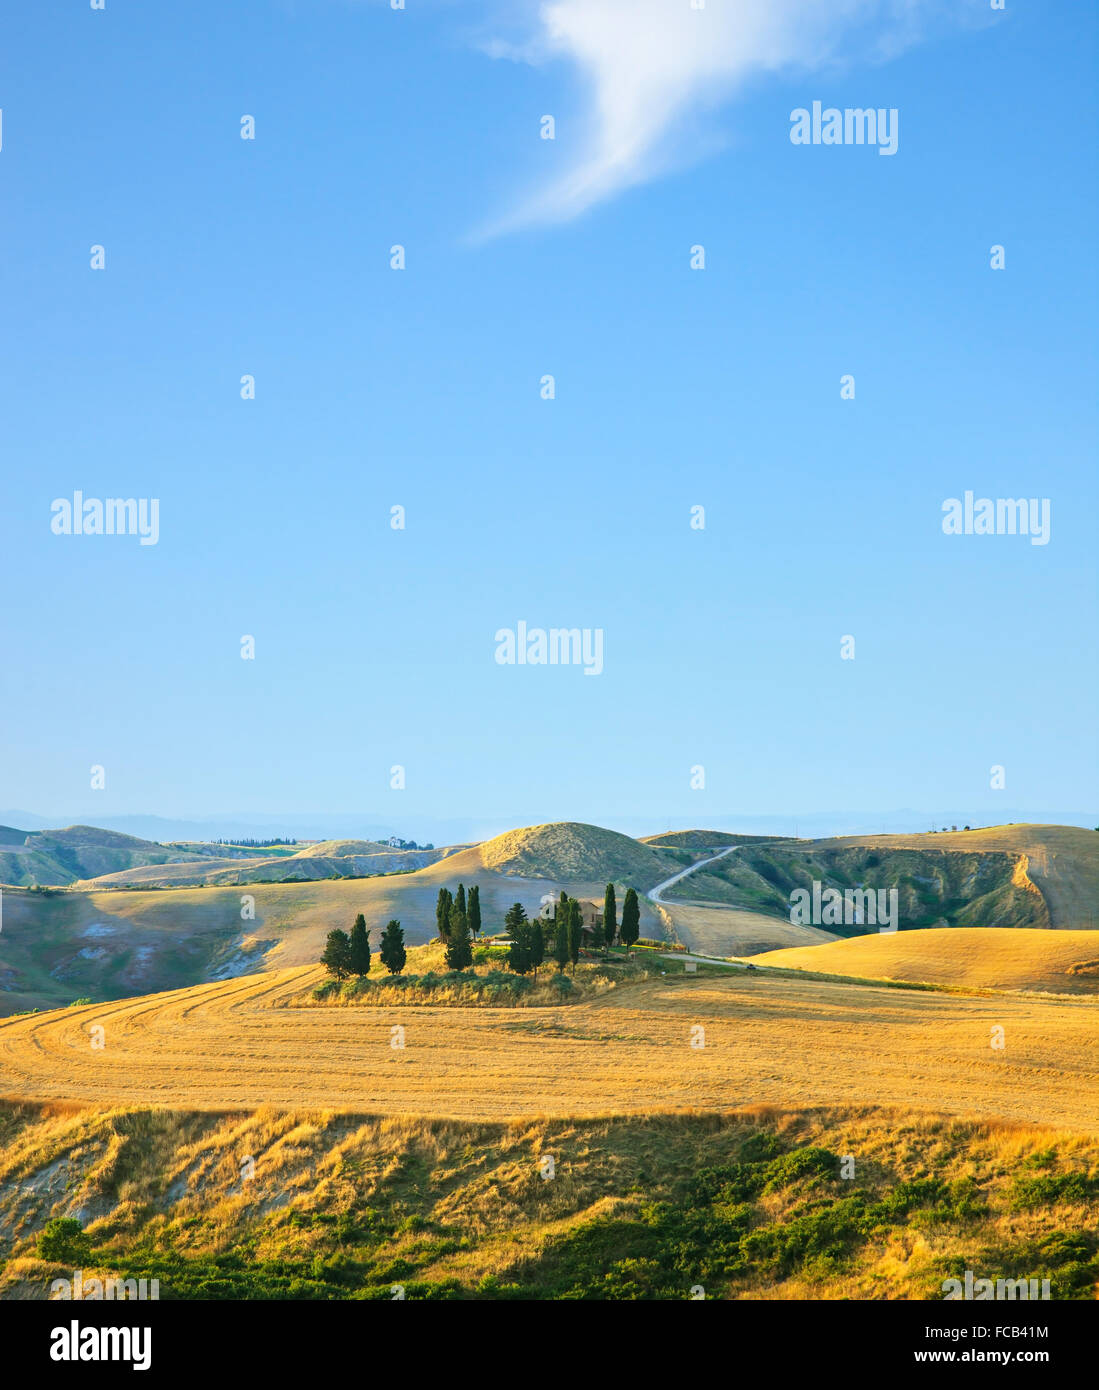 Toskana, Landschaft im ländlichen Raum. Landschaft-Bauernhof, Zypressen Bäume, grüne Wiese, blauer Himmel und seltsame Wolke. Volterra, Italien, Europa. Stockfoto